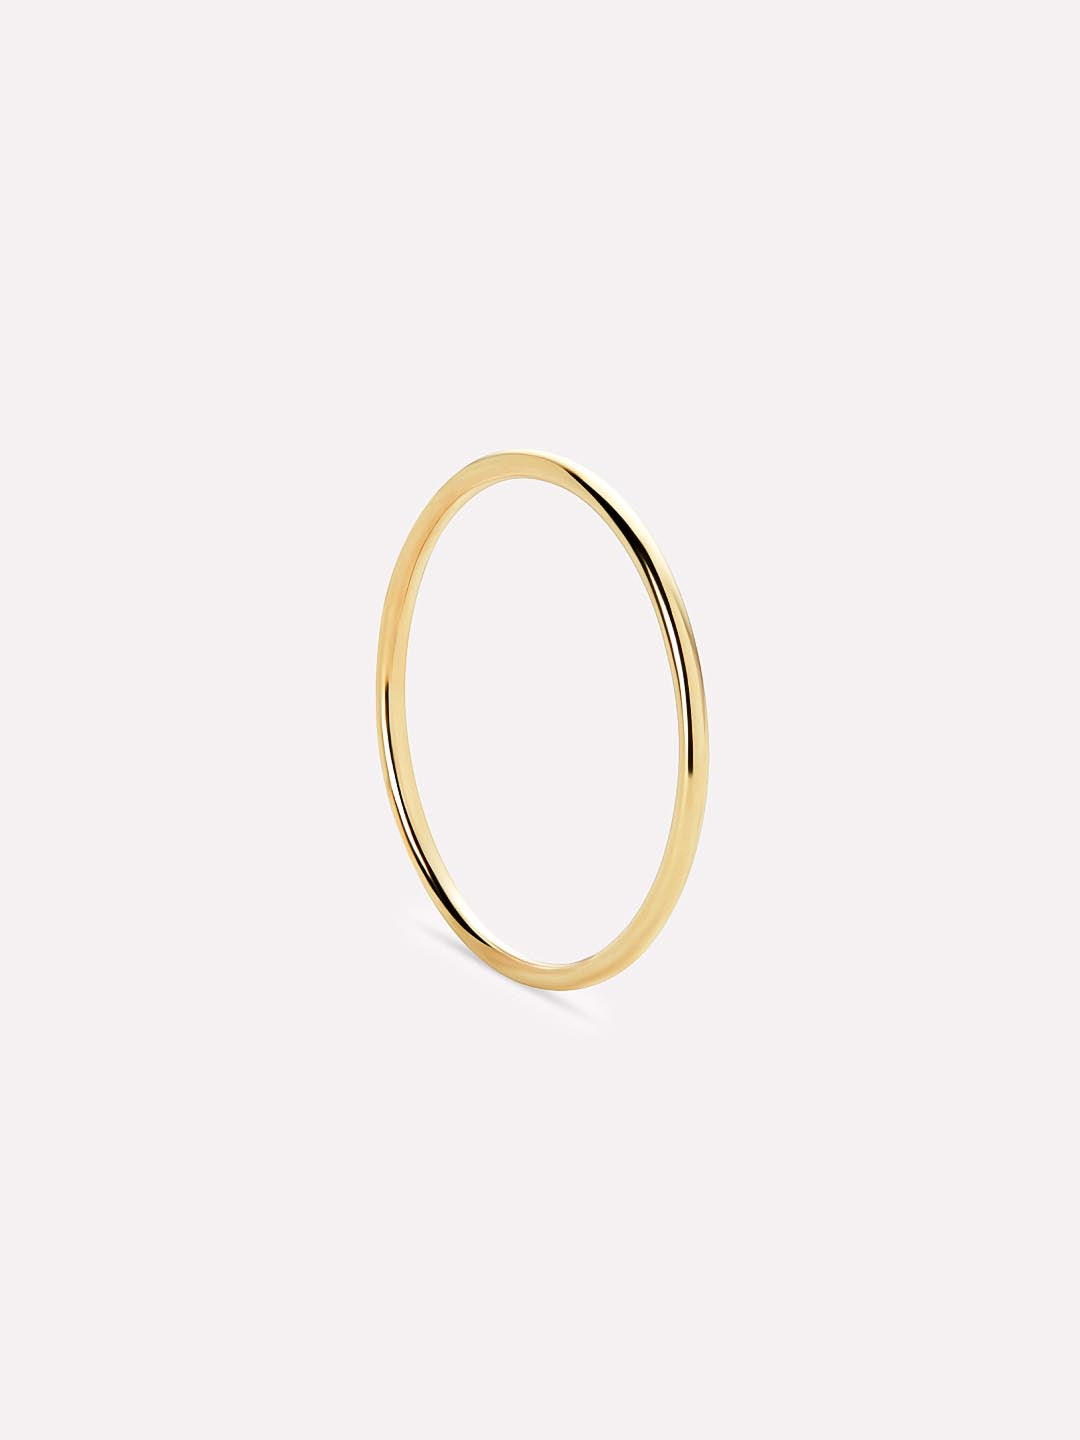 Gold Ring - Wander Adjustable Ring, Ana Luisa